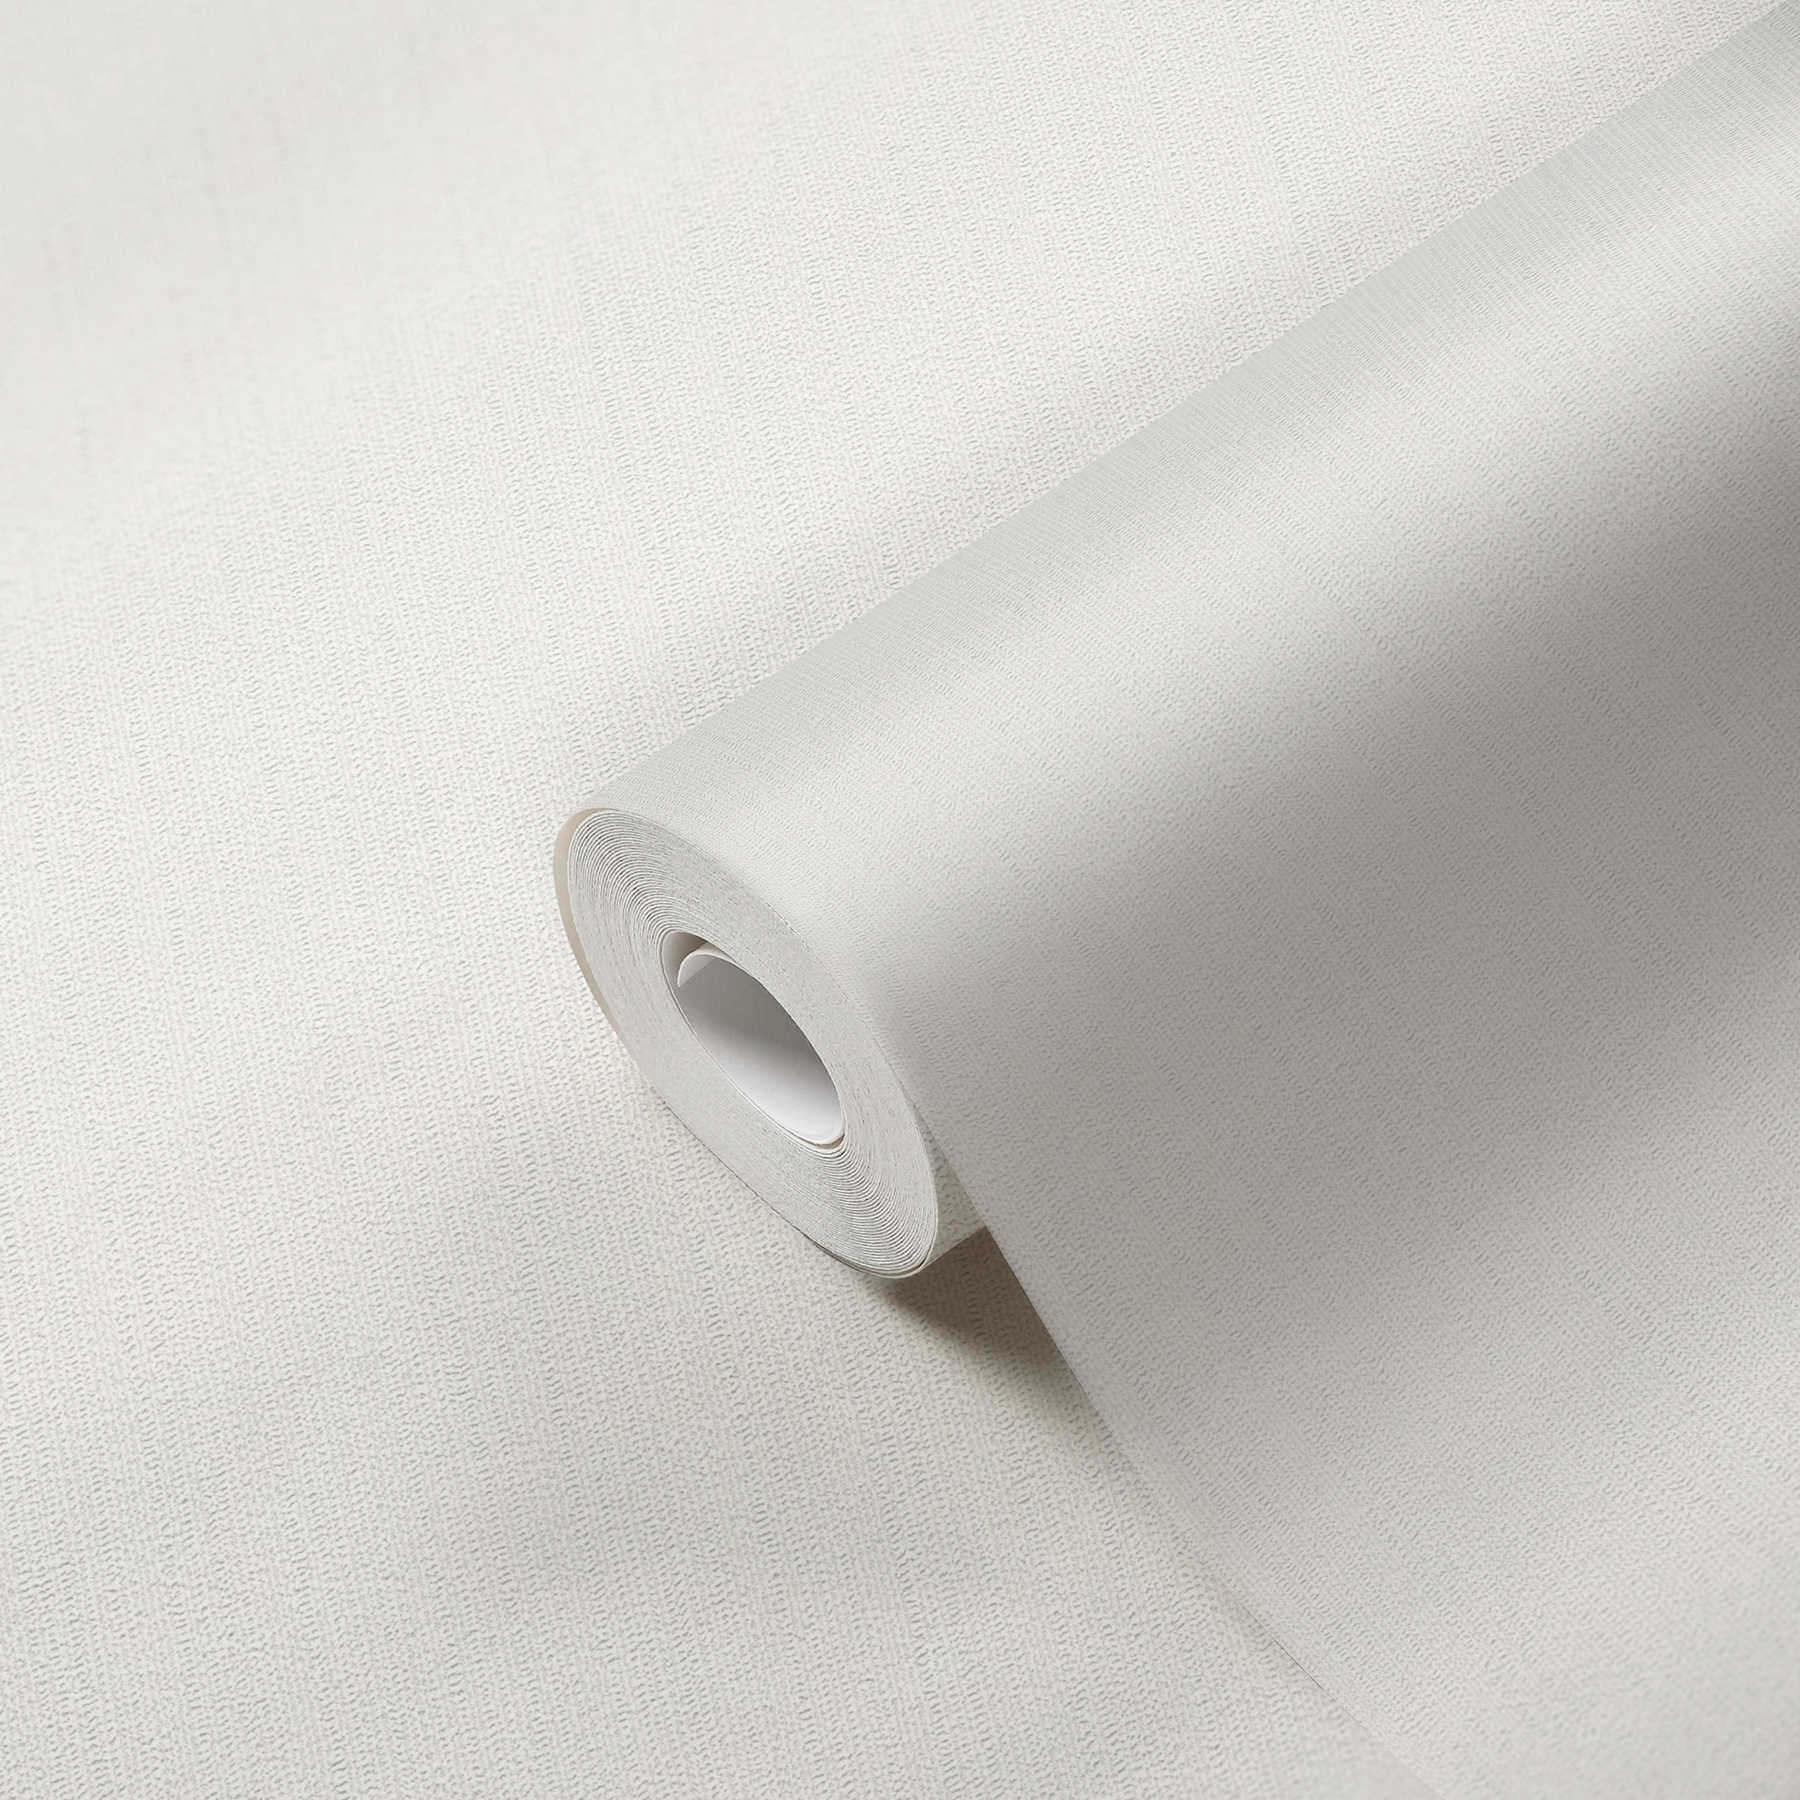             Non-woven wallpaper white monochrome, matt with foam structure
        